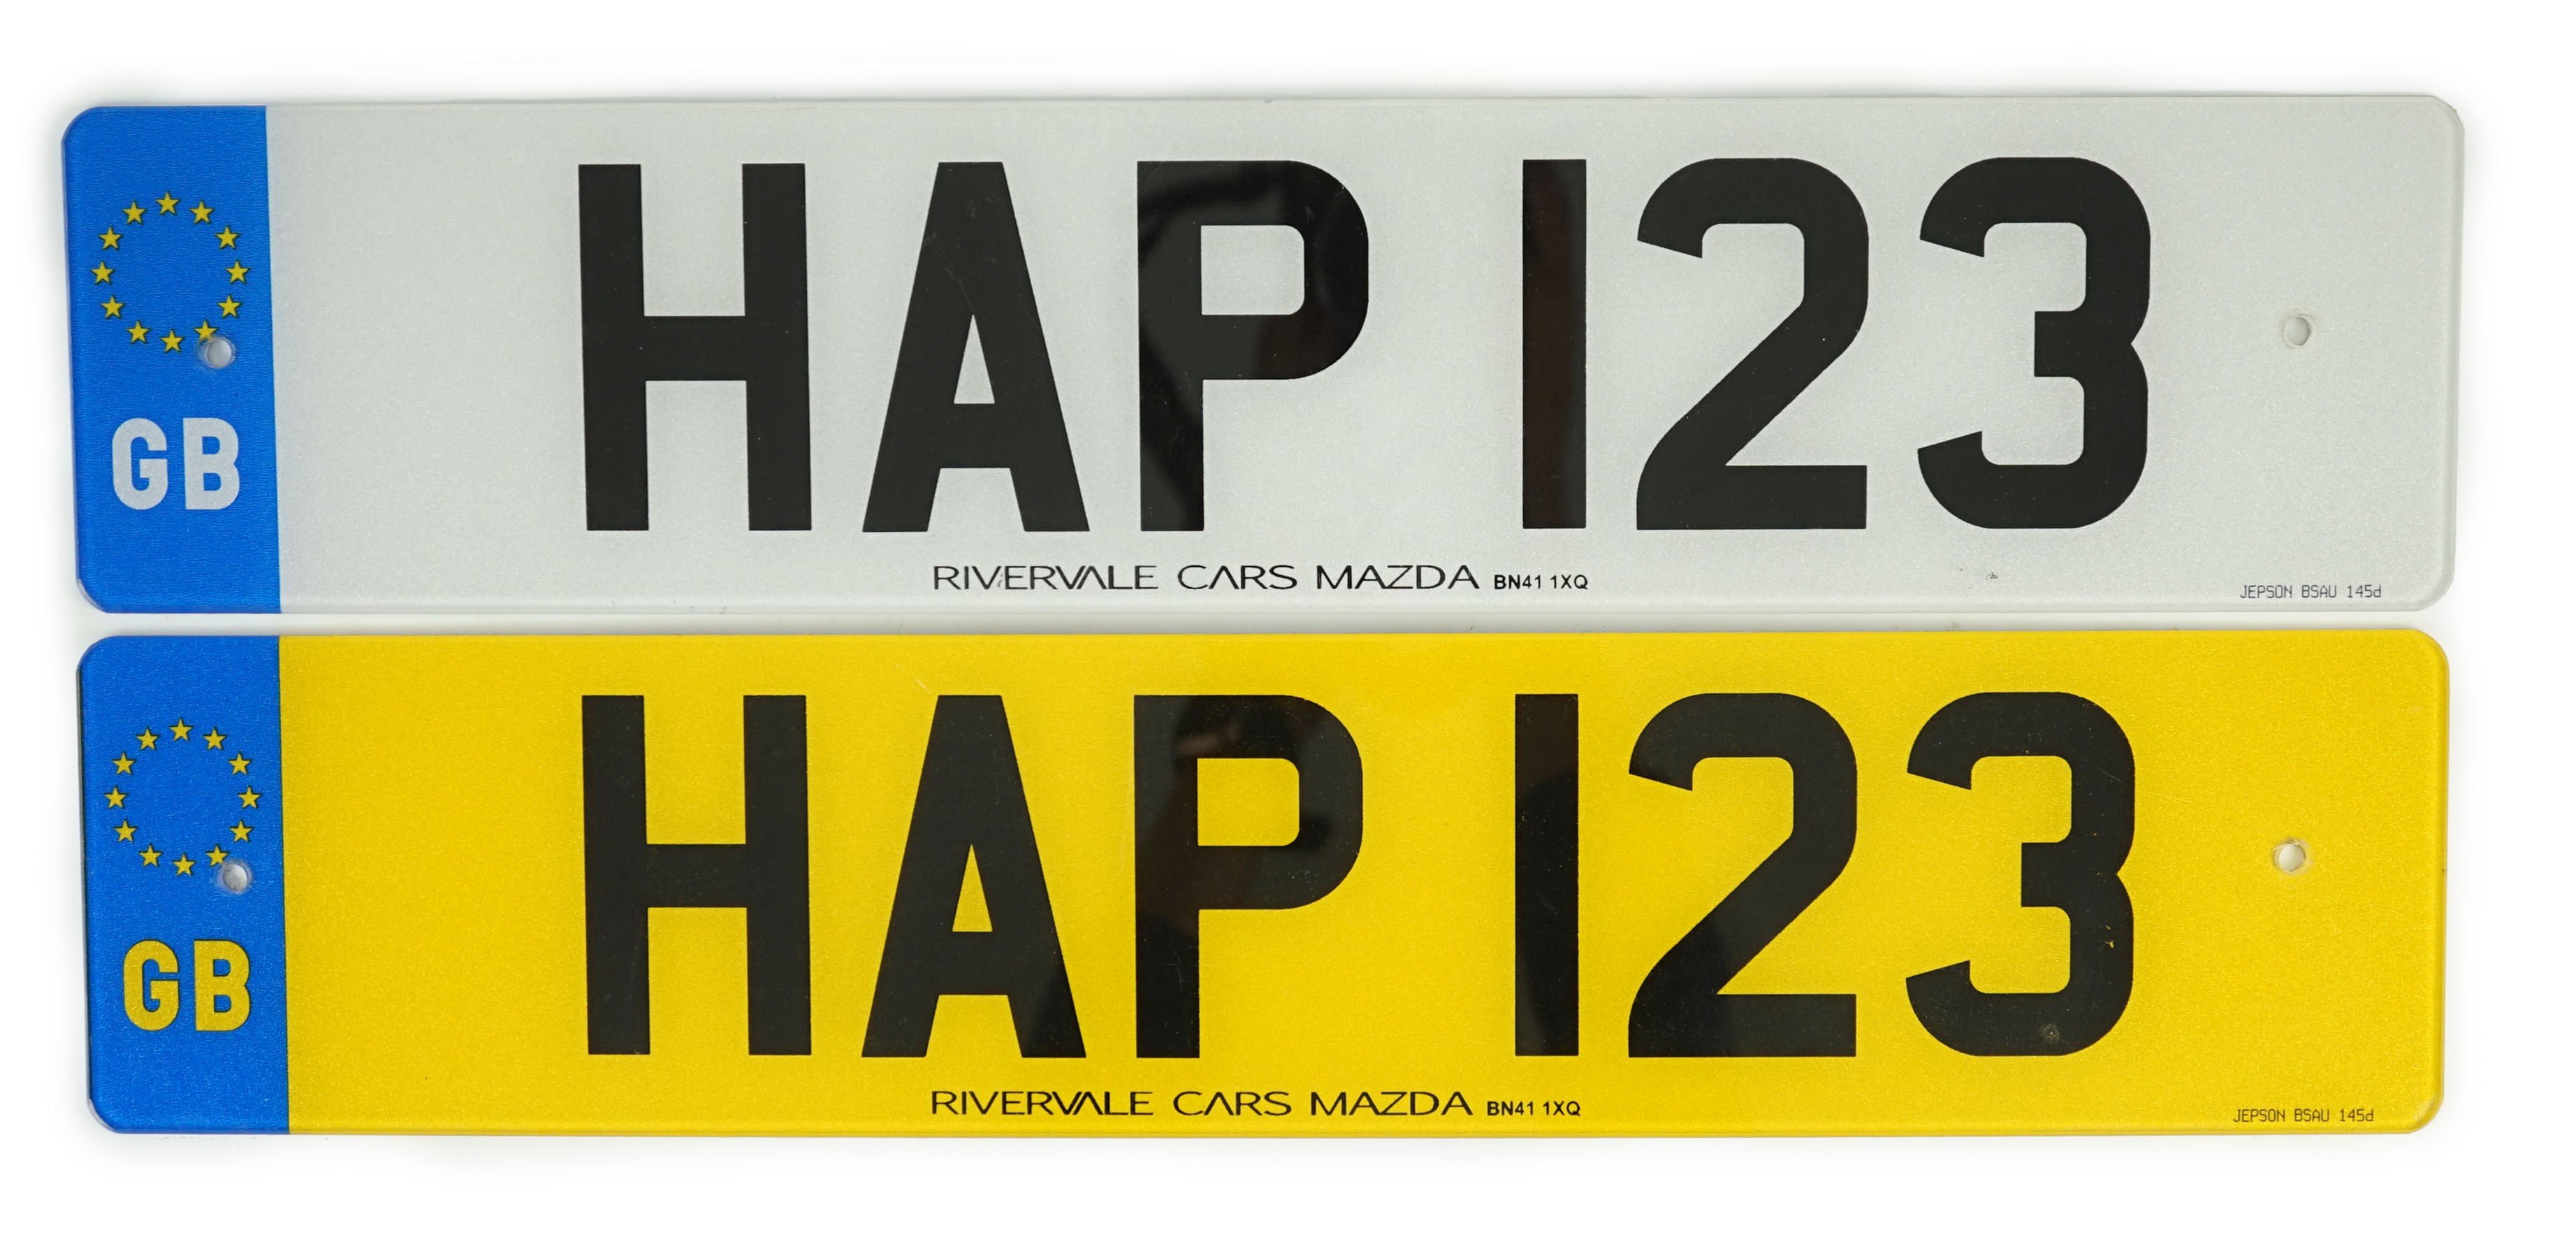 'HAP 123' UK Registration Number